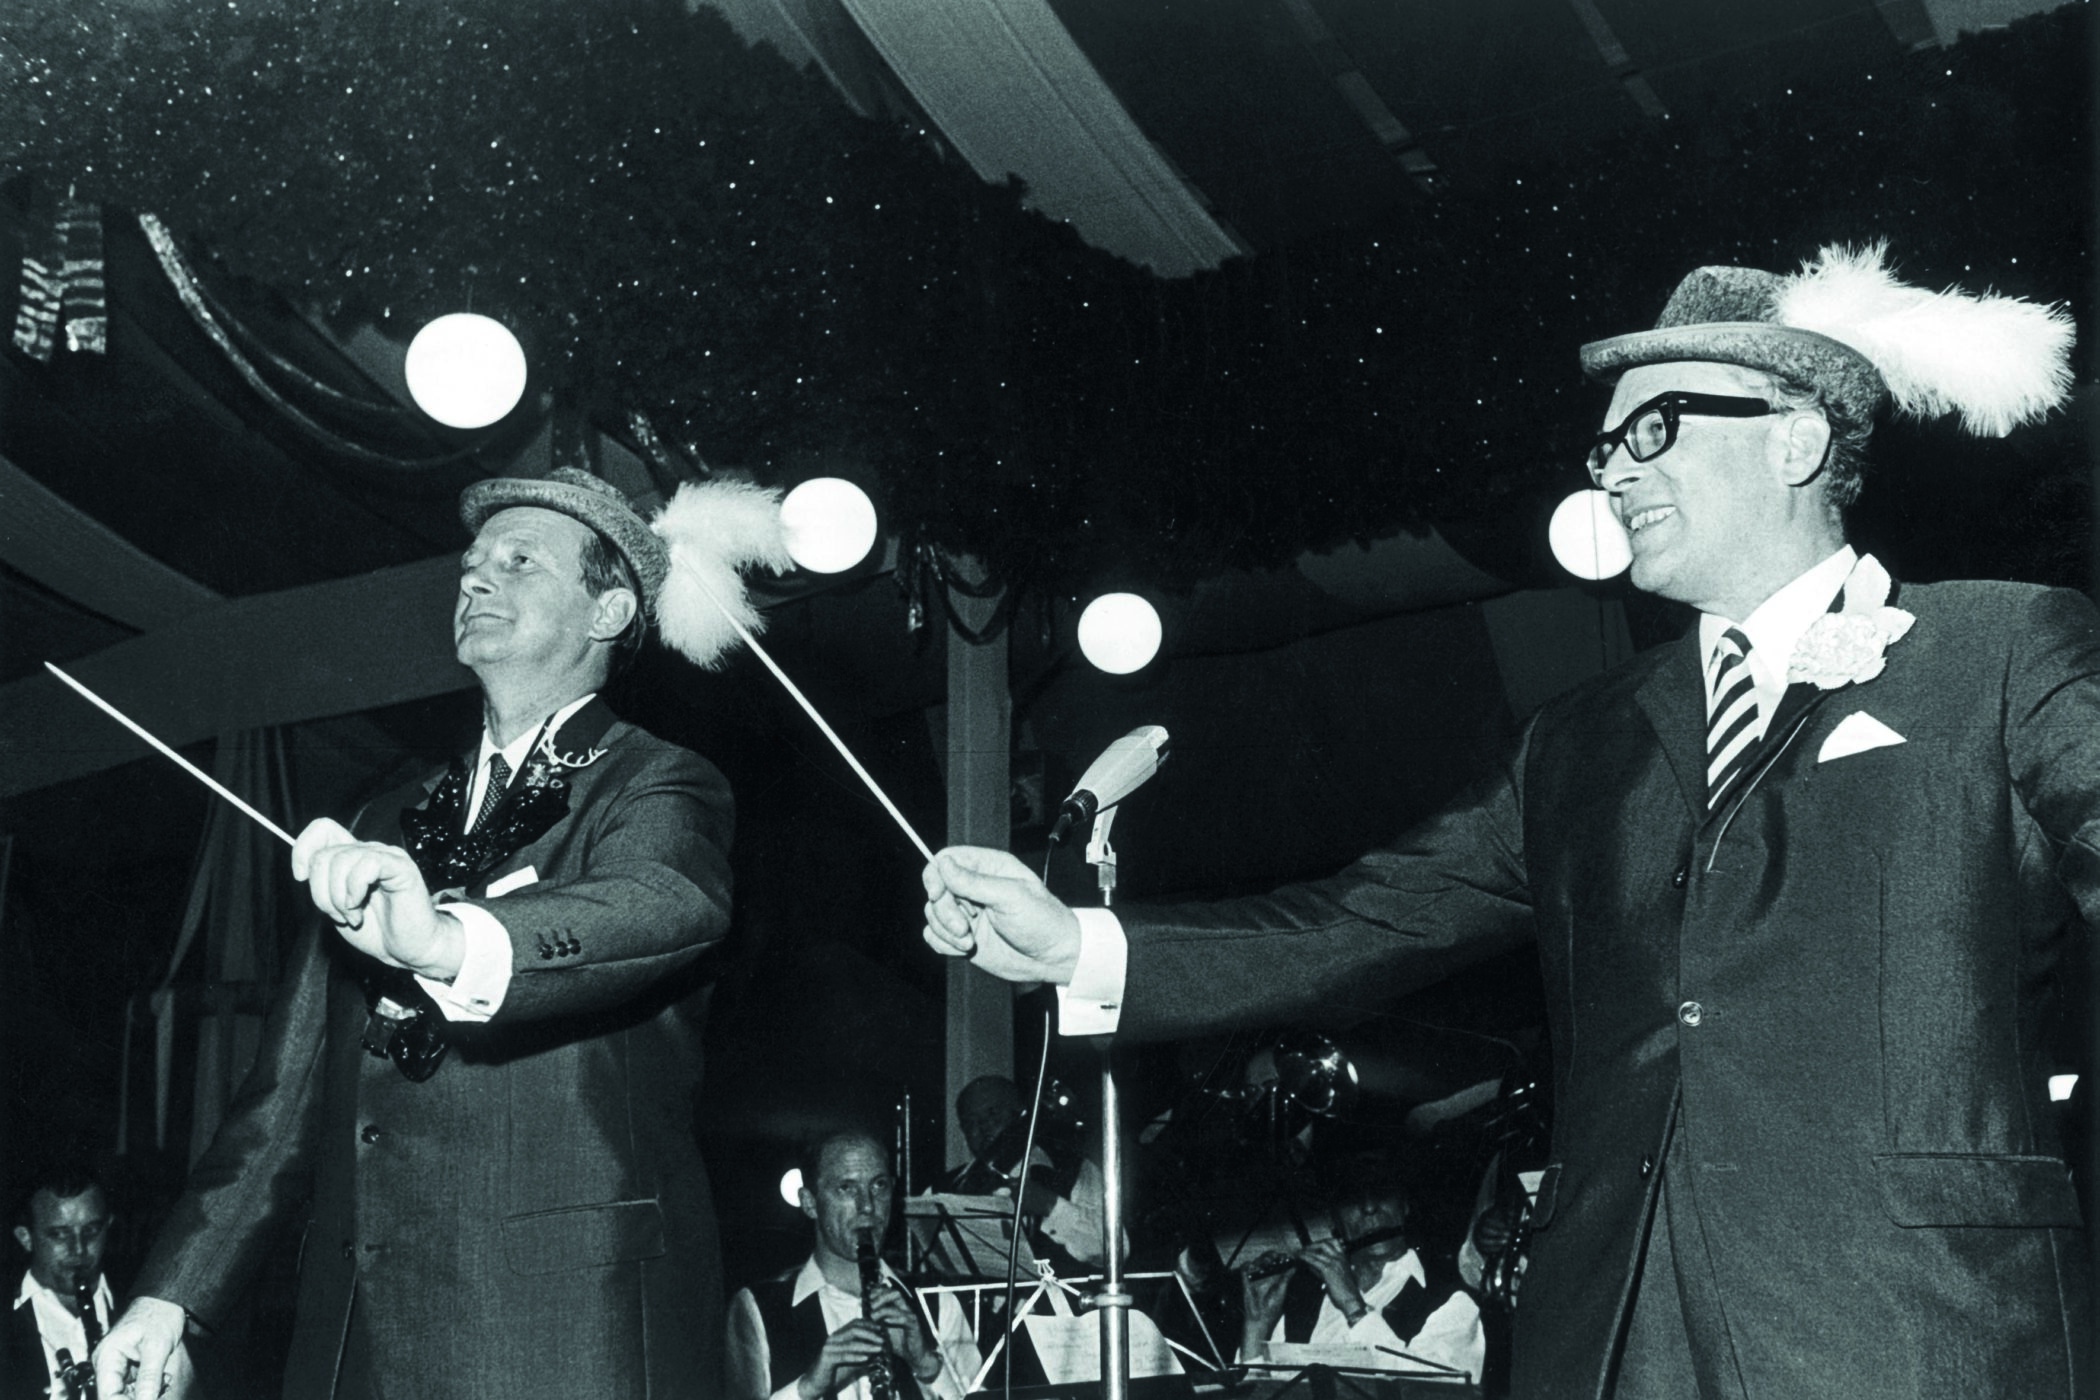 Ministerpräsident Dr. Hans Filbinger (l) und sein Stellvertreter, Innenminister Walter Krause (SPD), mit jeweils einem Taktstock beim gemeinsamen Dirigieren einer Trachtenkapelle im Volksfestzelt auf den Cannstatter Wasen in Stuttgart am 03.10.1967